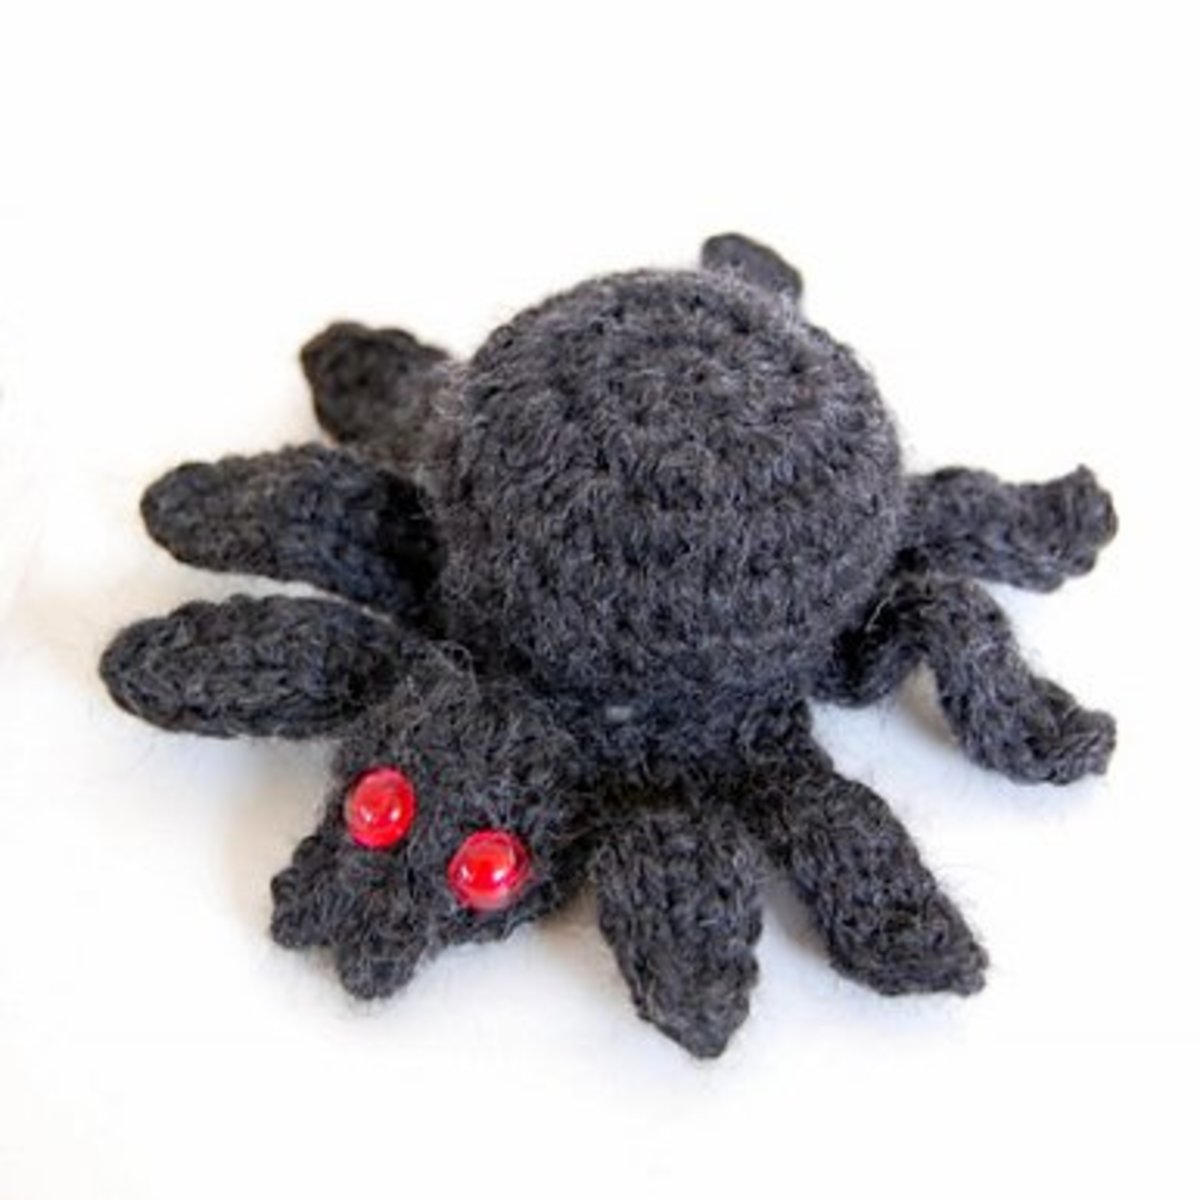 free-halloween-spider-crochet-patterns